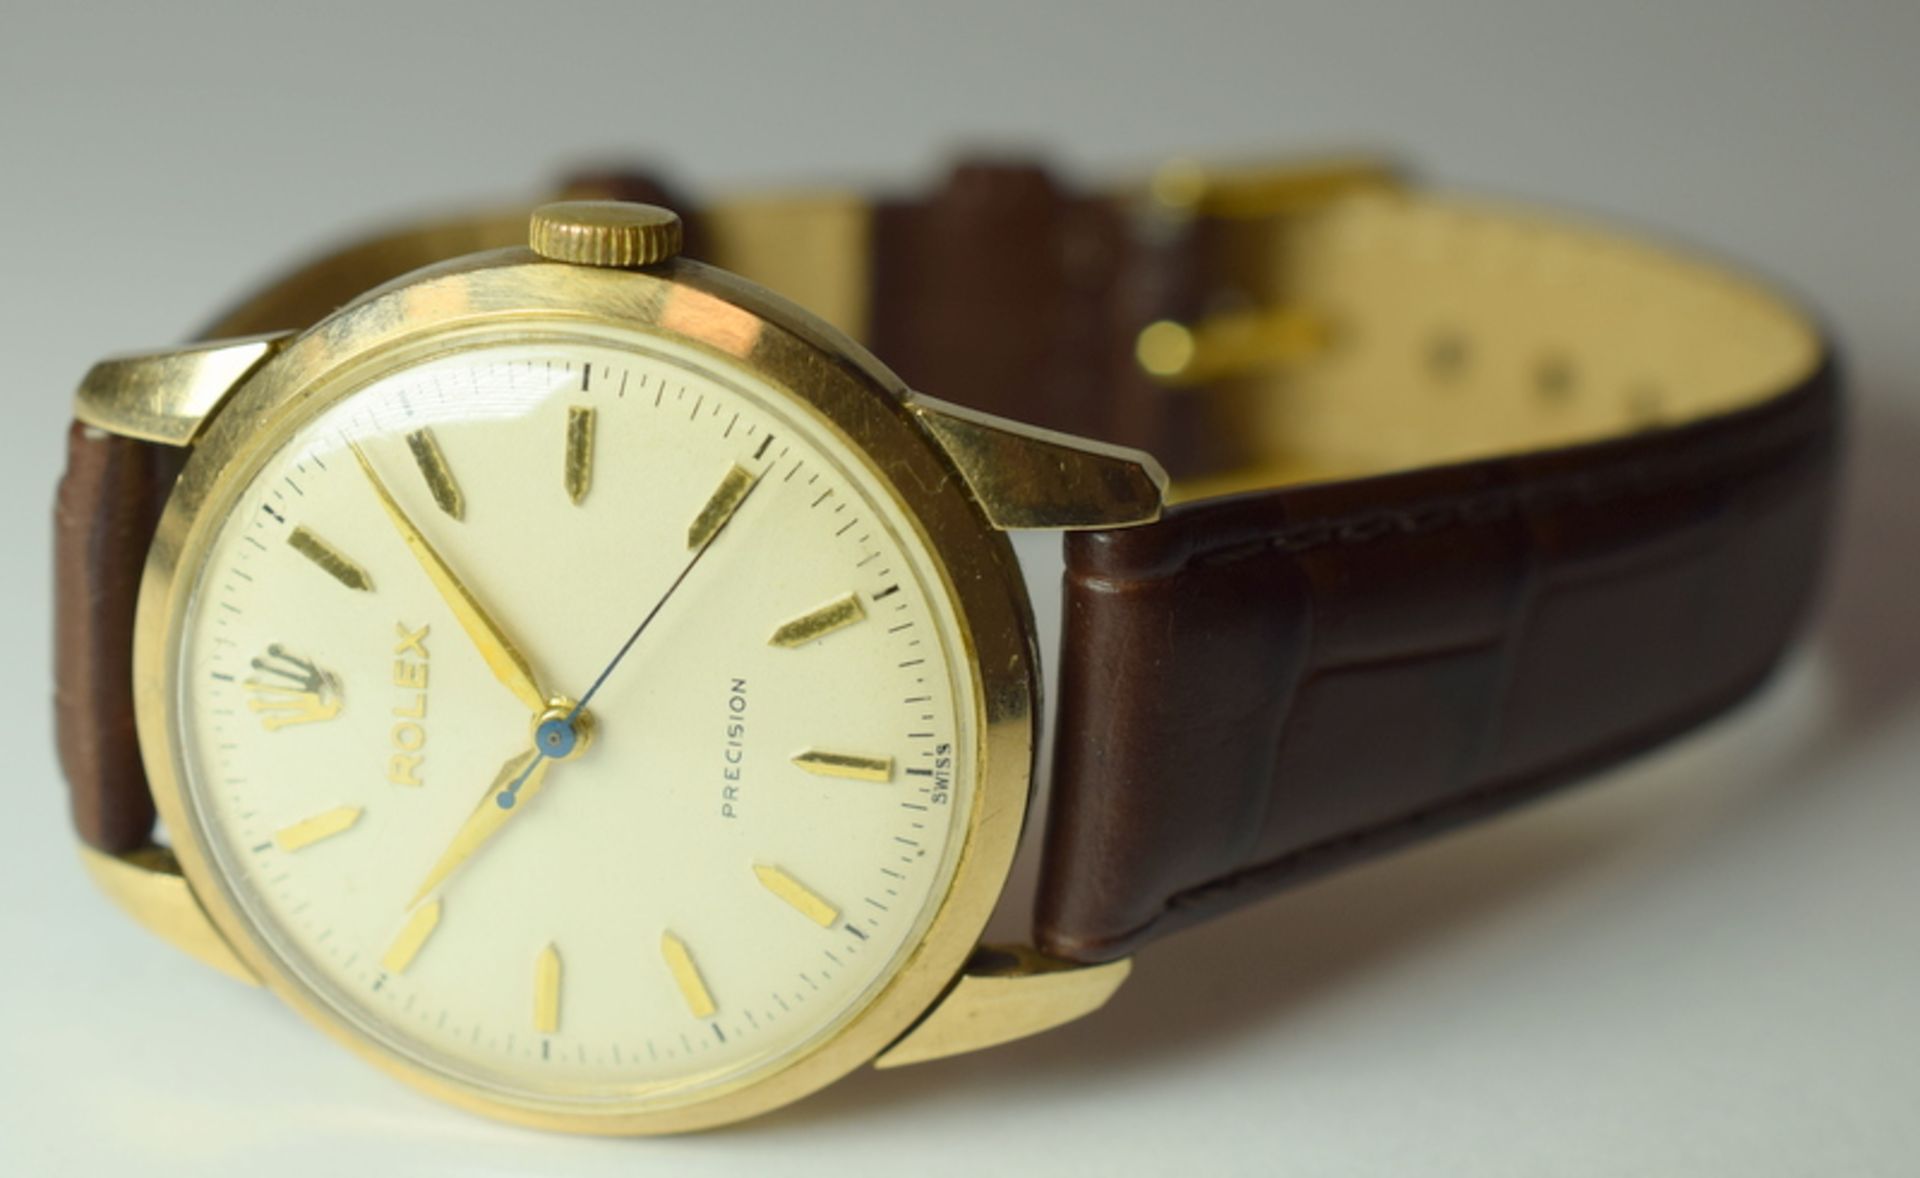 Rolex Precision 9ct Gold Gentleman's Wristwatch